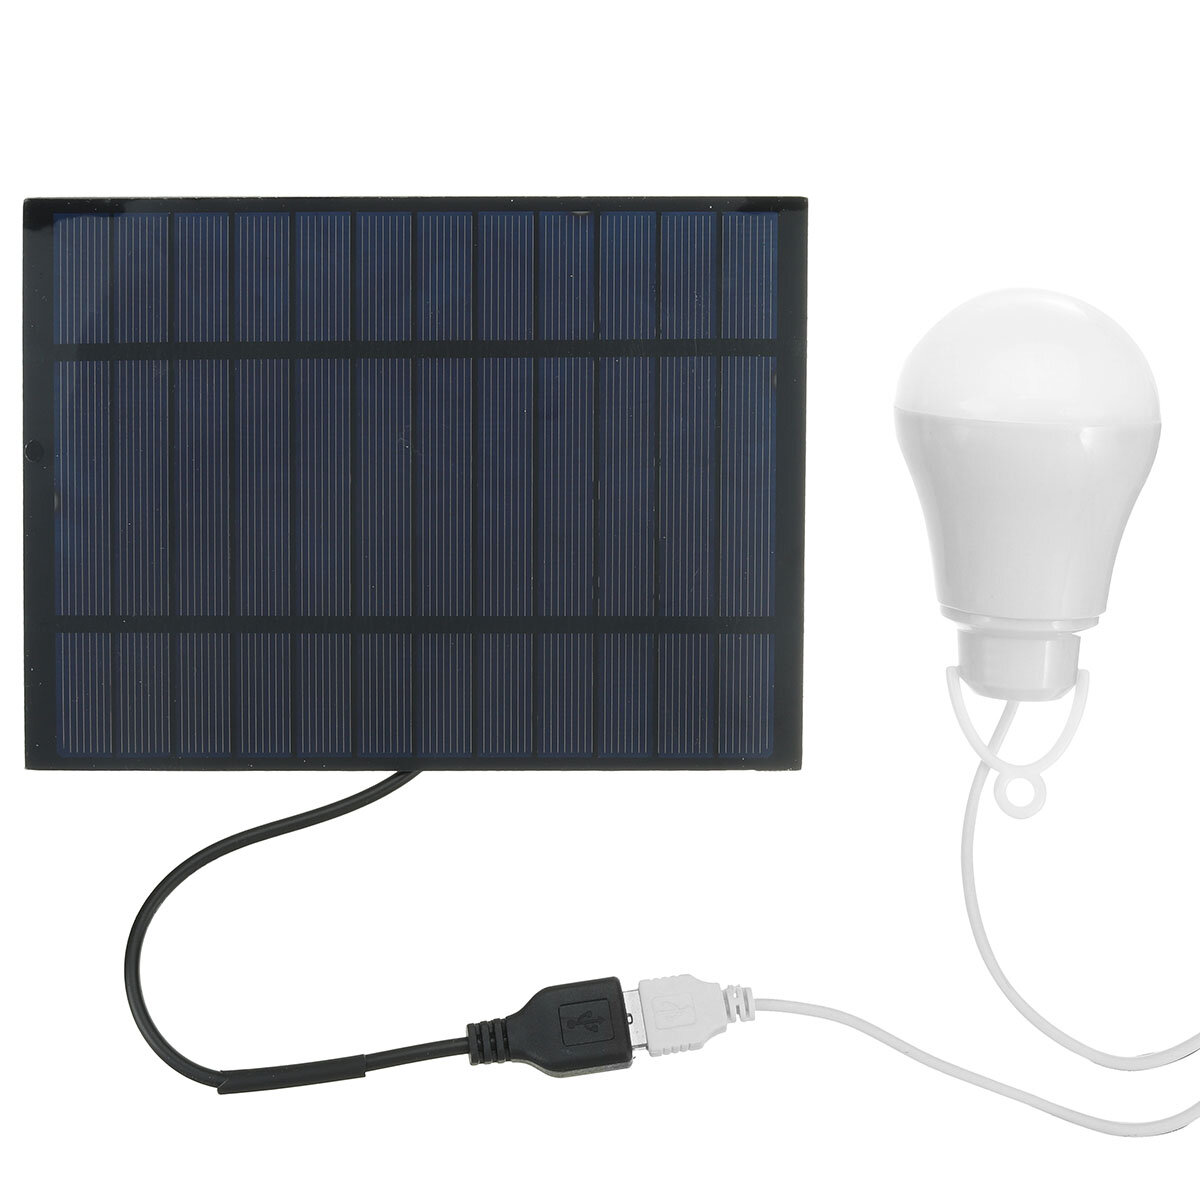 Lâmpada solar LED portátil Luz solar Energia solar Lâmpada de emergência alimentada por painel solar para jardim ao ar livre, camping, tenda de pesca